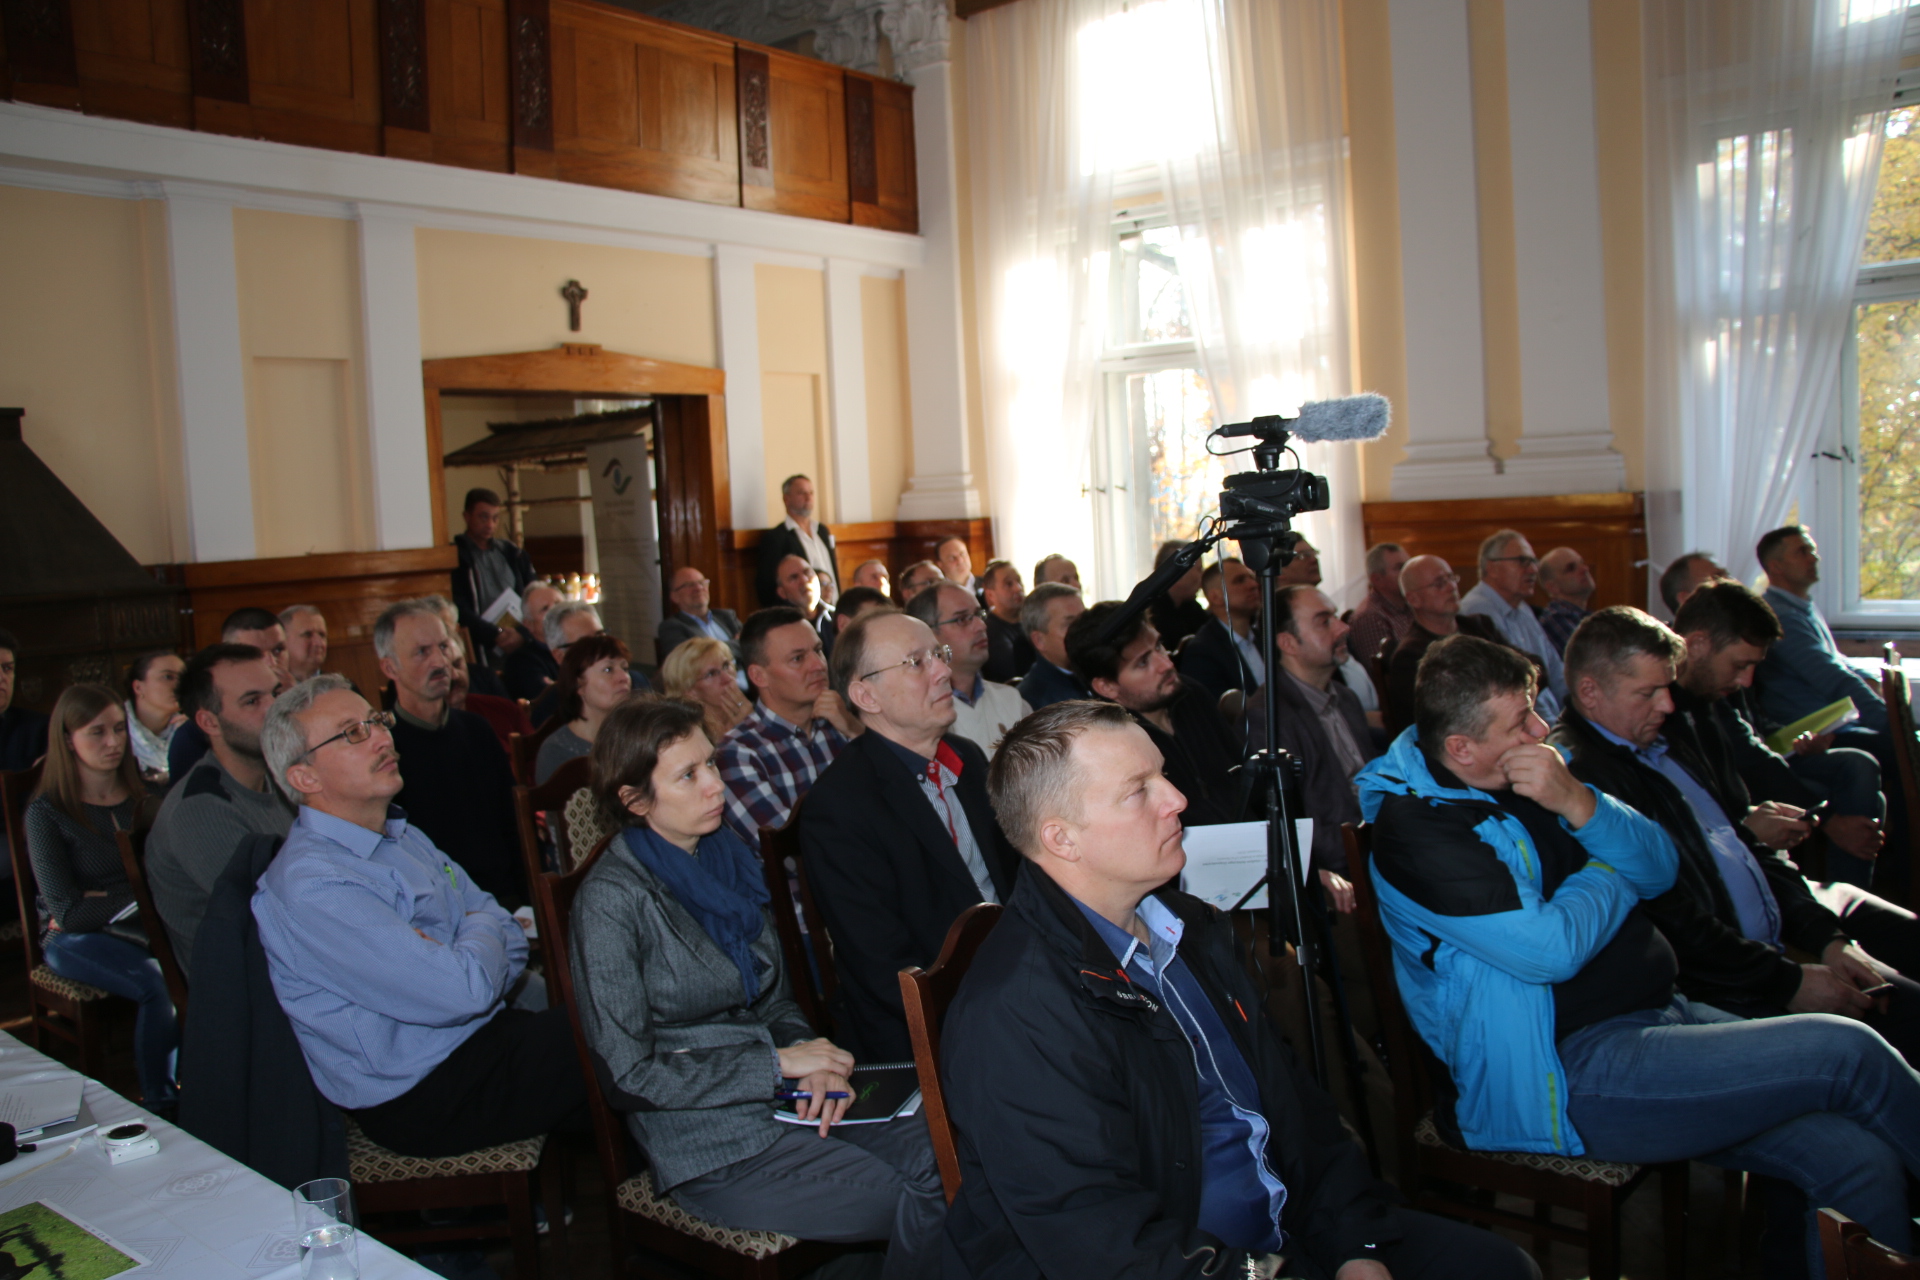 W konferencji wzięli udział rolnicy z całej Polski.